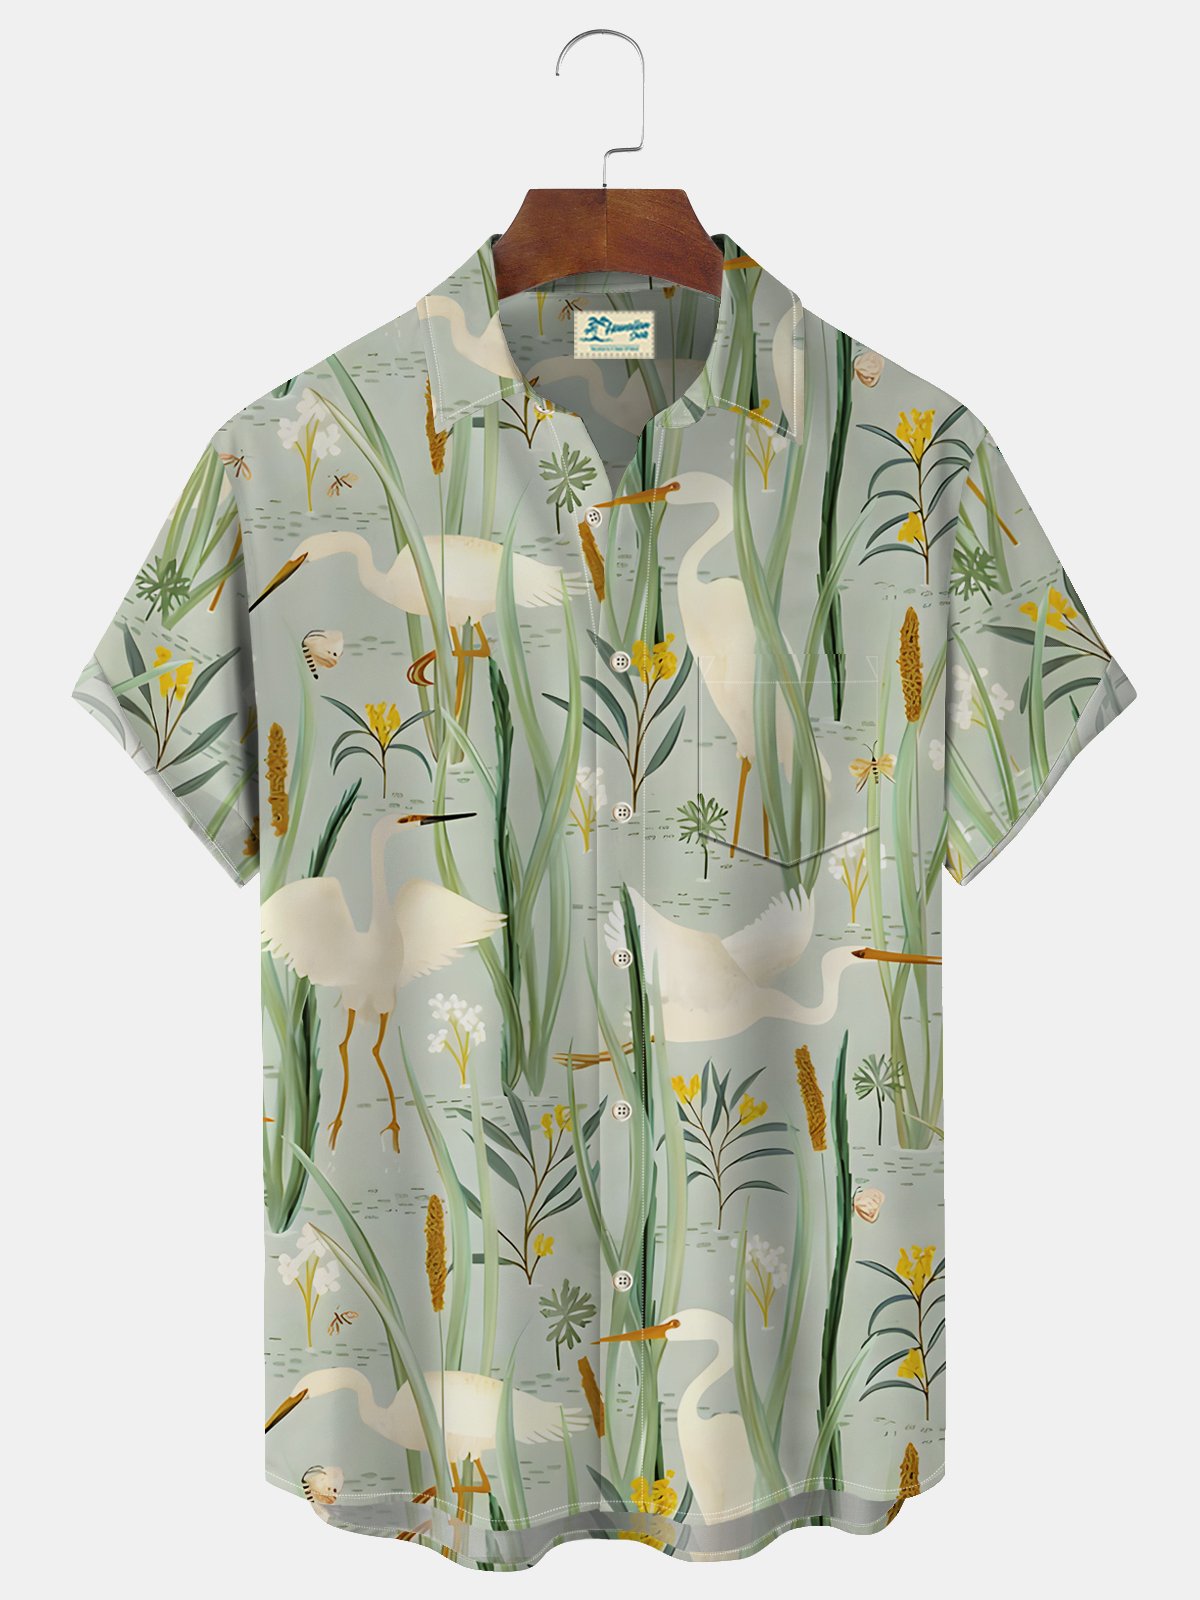 Royaura® Beach Holiday Light Green Men's Floral Hawaiian Shirt Breathable Comfortable Camp Pocket Shirt Big Tall